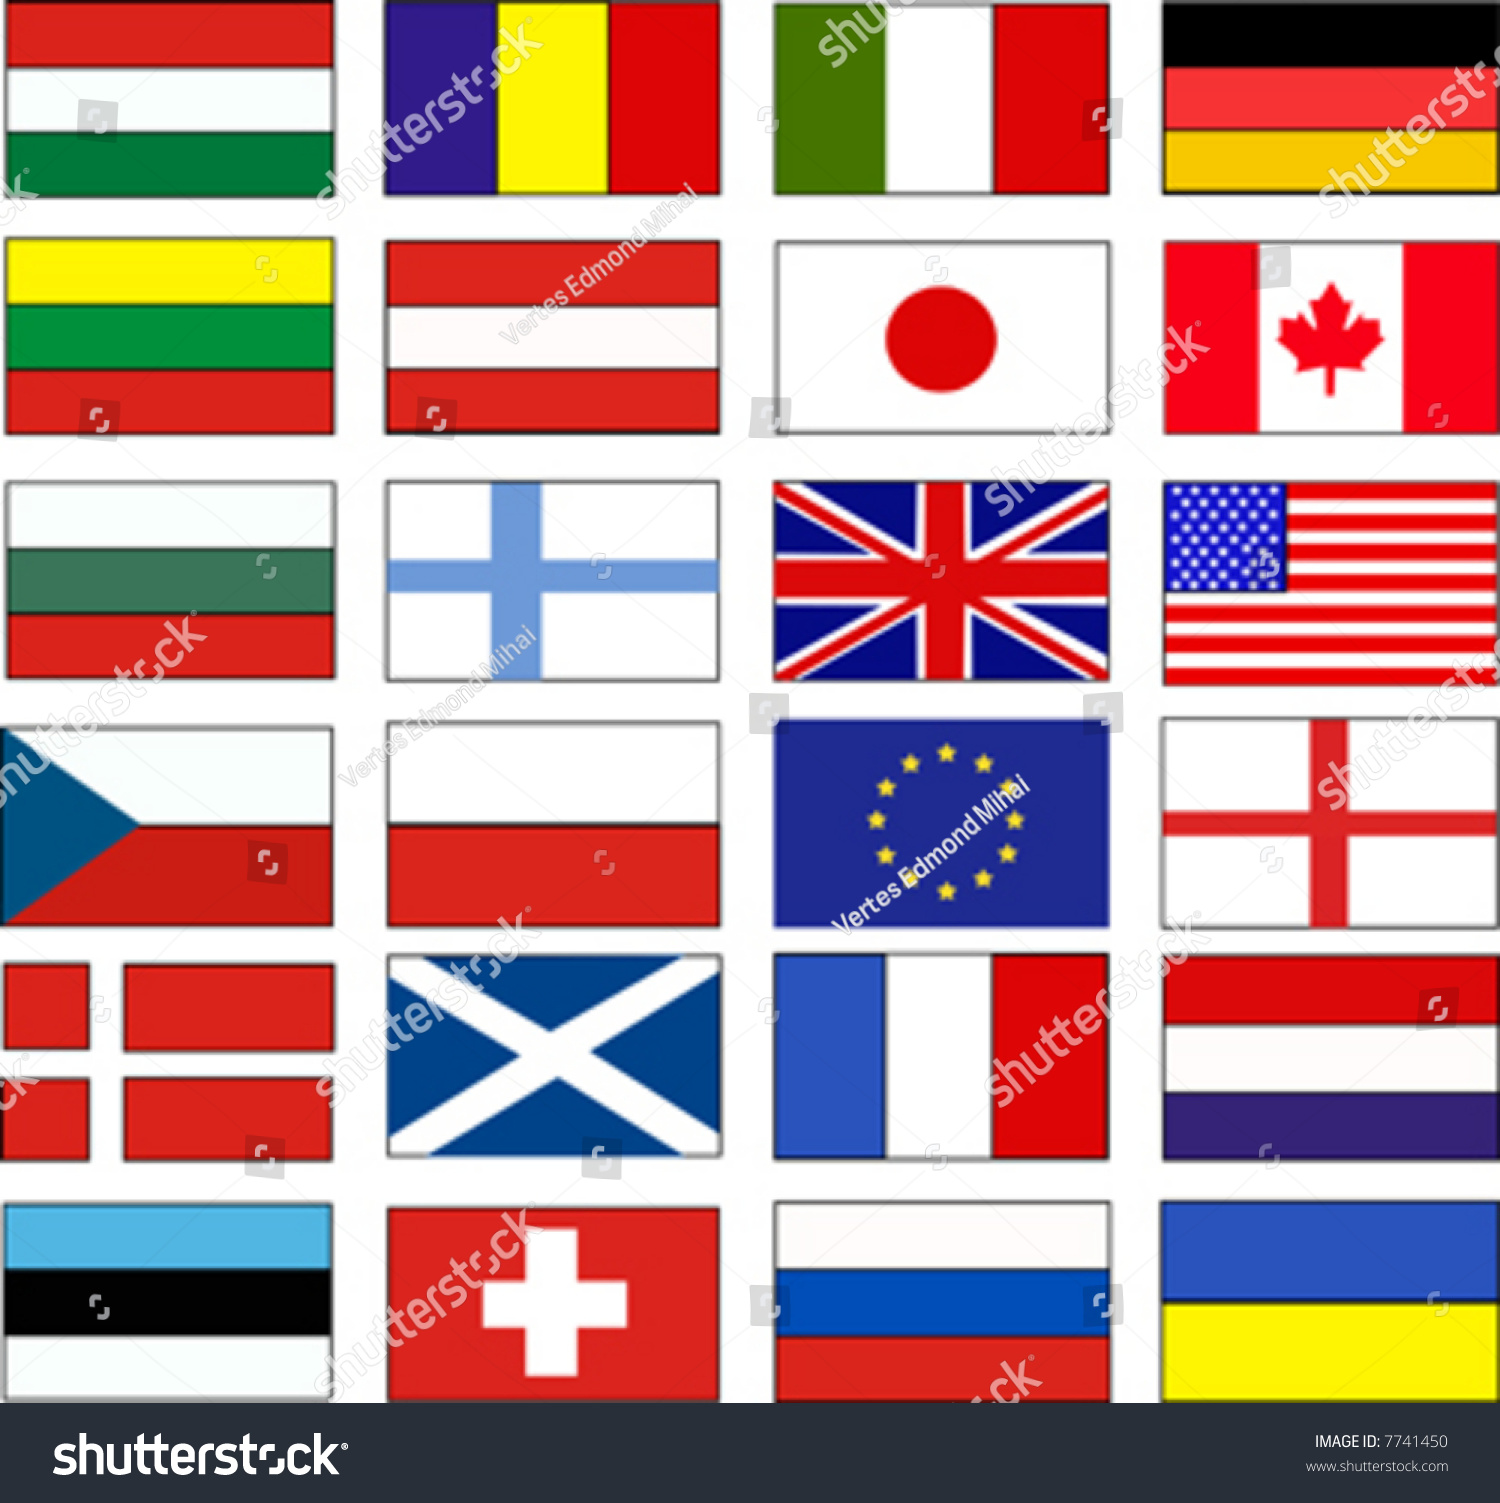 Vector Flags - 7741450 : Shutterstock